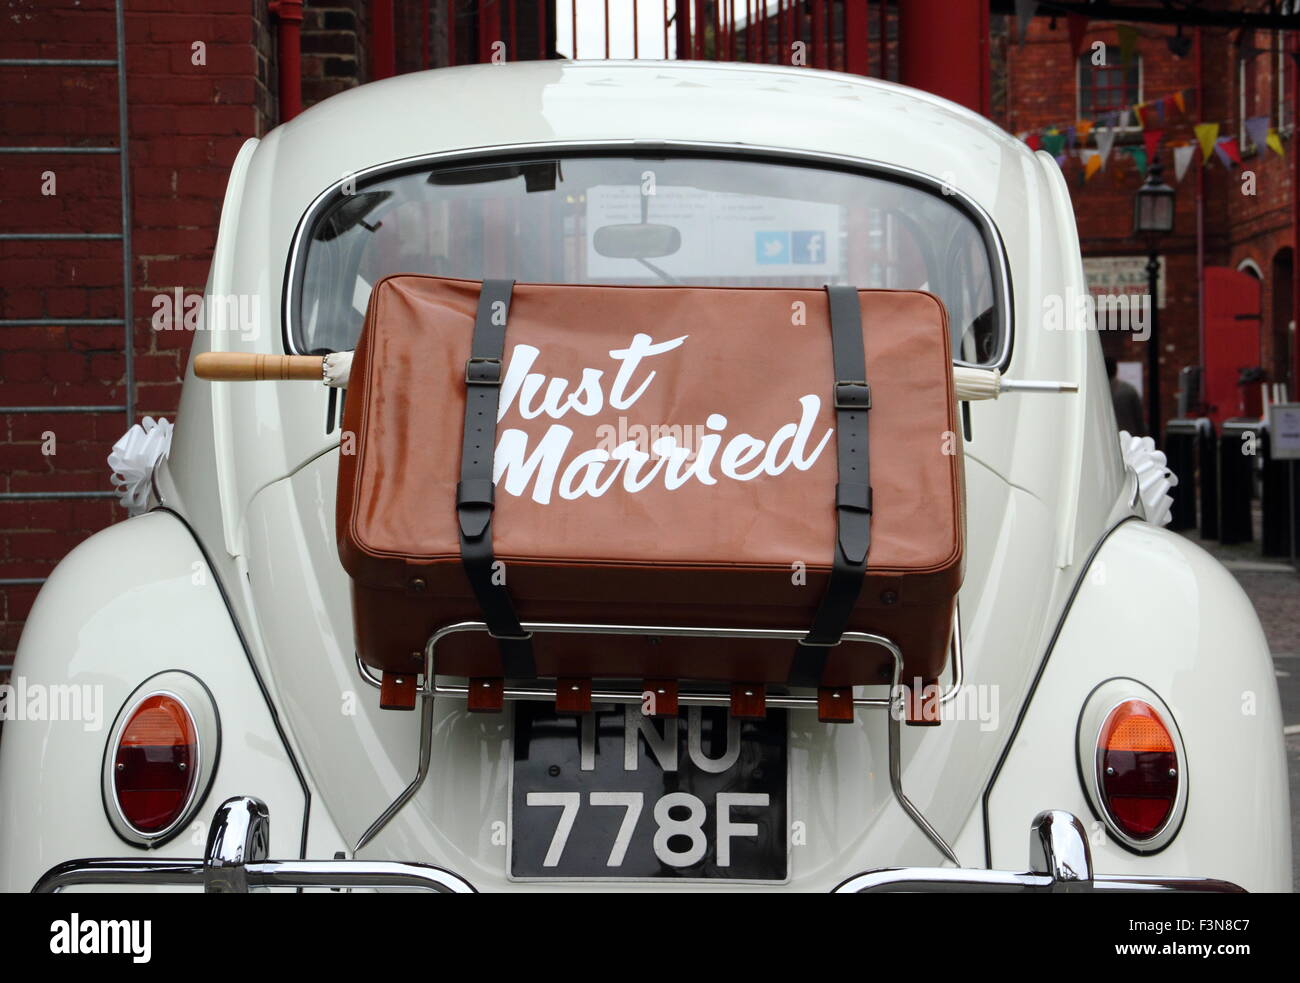 Ein Fall markiert "Just Married" geschnallt auf der Rückseite des einen VW Käfer Auto, England, UK Stockfoto